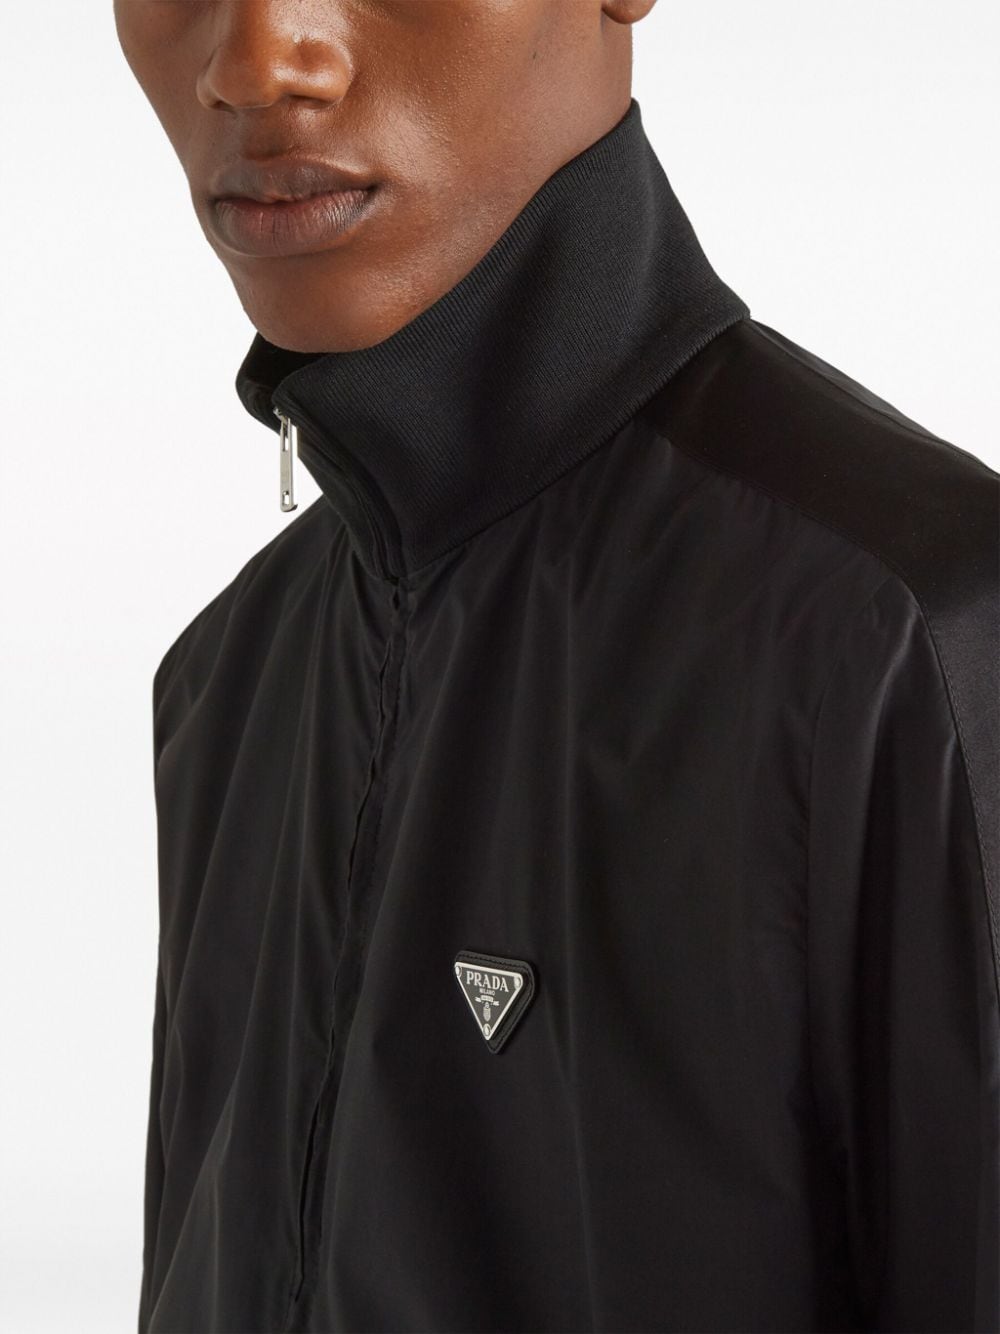 PRADA Men's Black Silk Jacket for Timeless Elegance